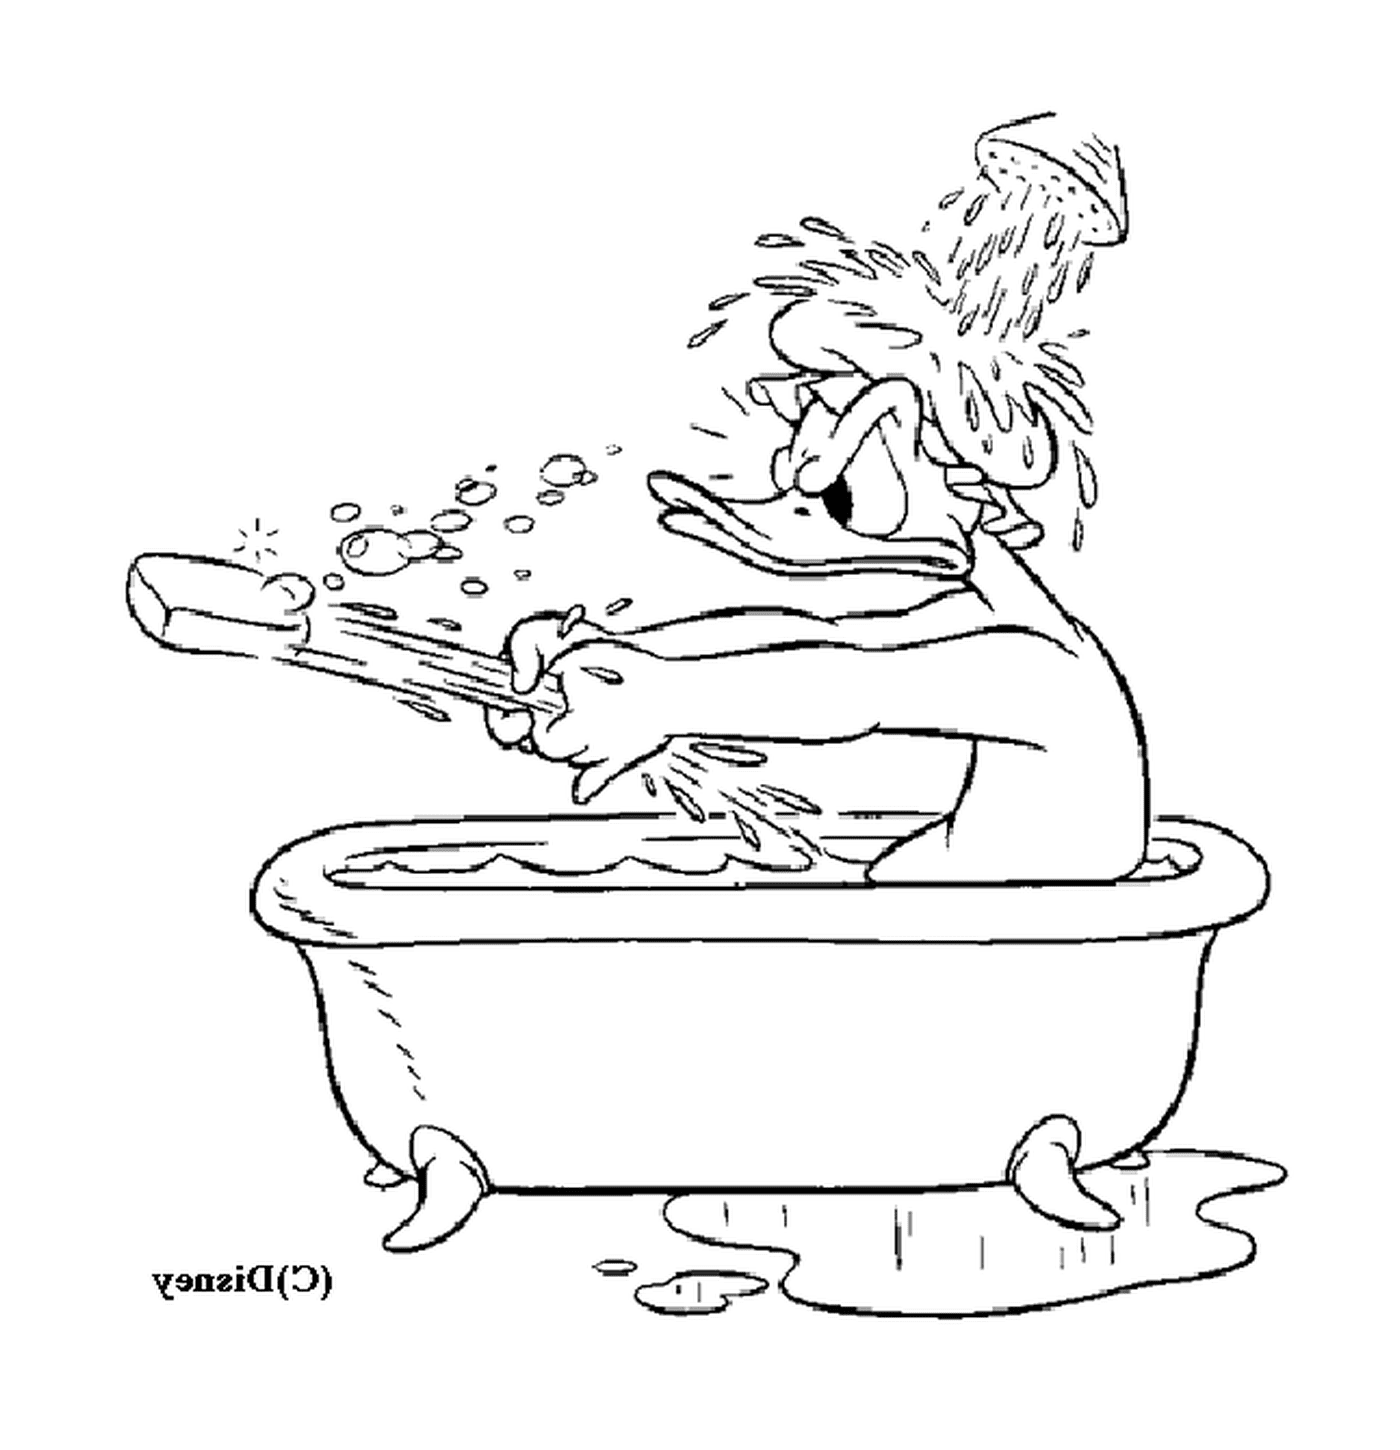  Дональд принимает расслабляющую ванну 